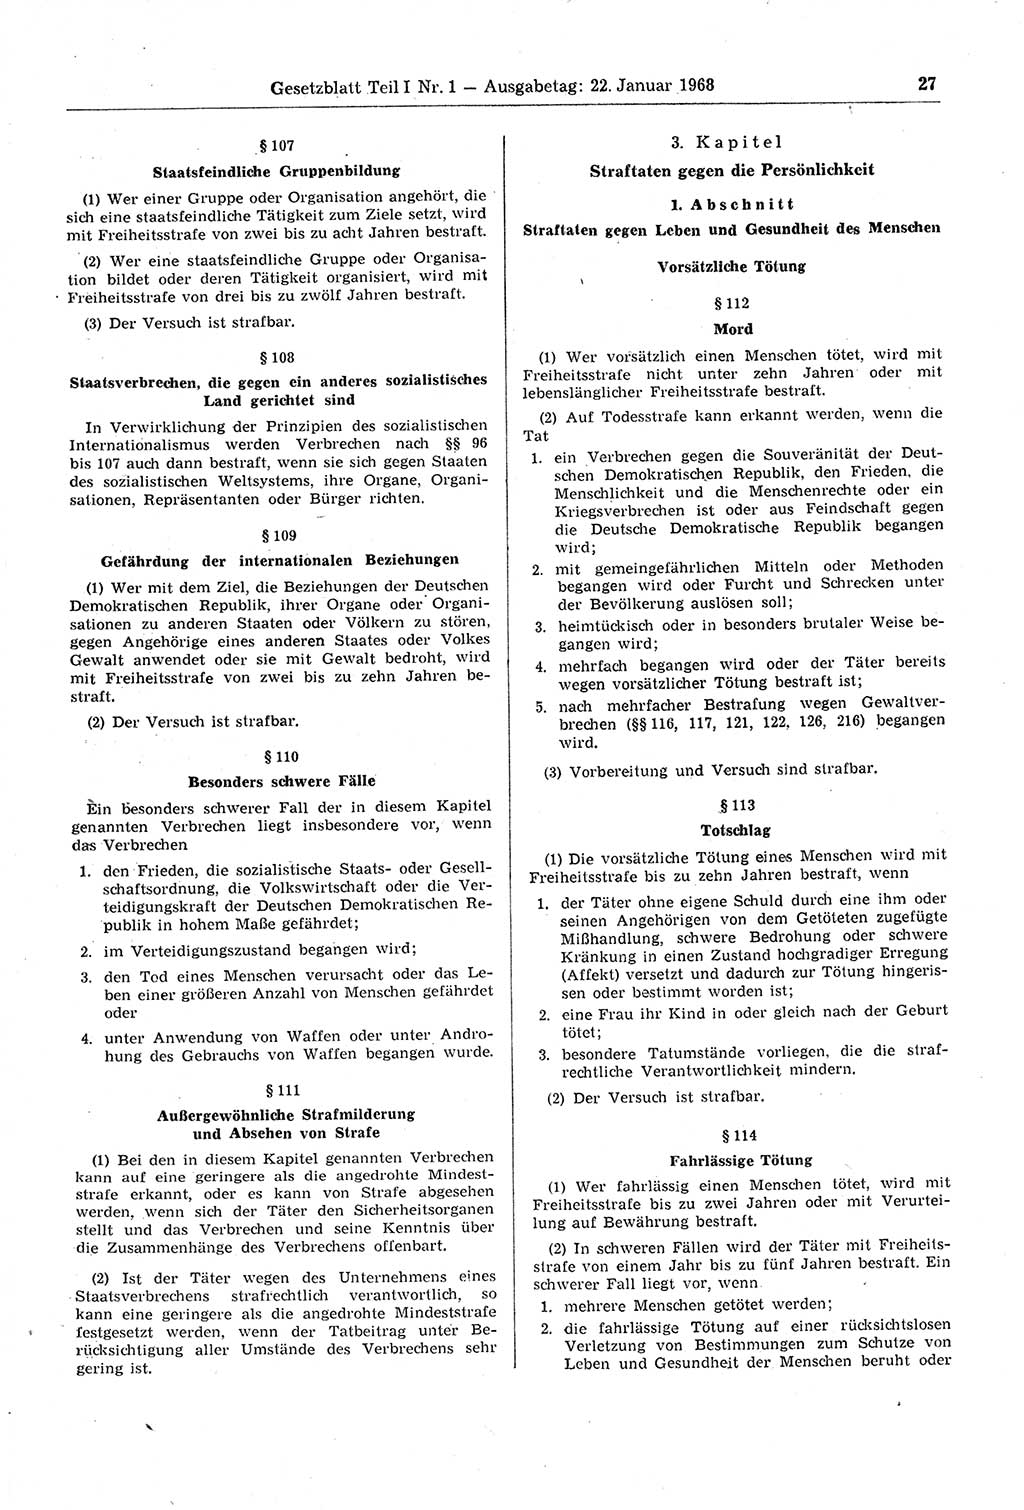 Gesetzblatt (GBl.) der Deutschen Demokratischen Republik (DDR) Teil Ⅰ 1968, Seite 27 (GBl. DDR Ⅰ 1968, S. 27)